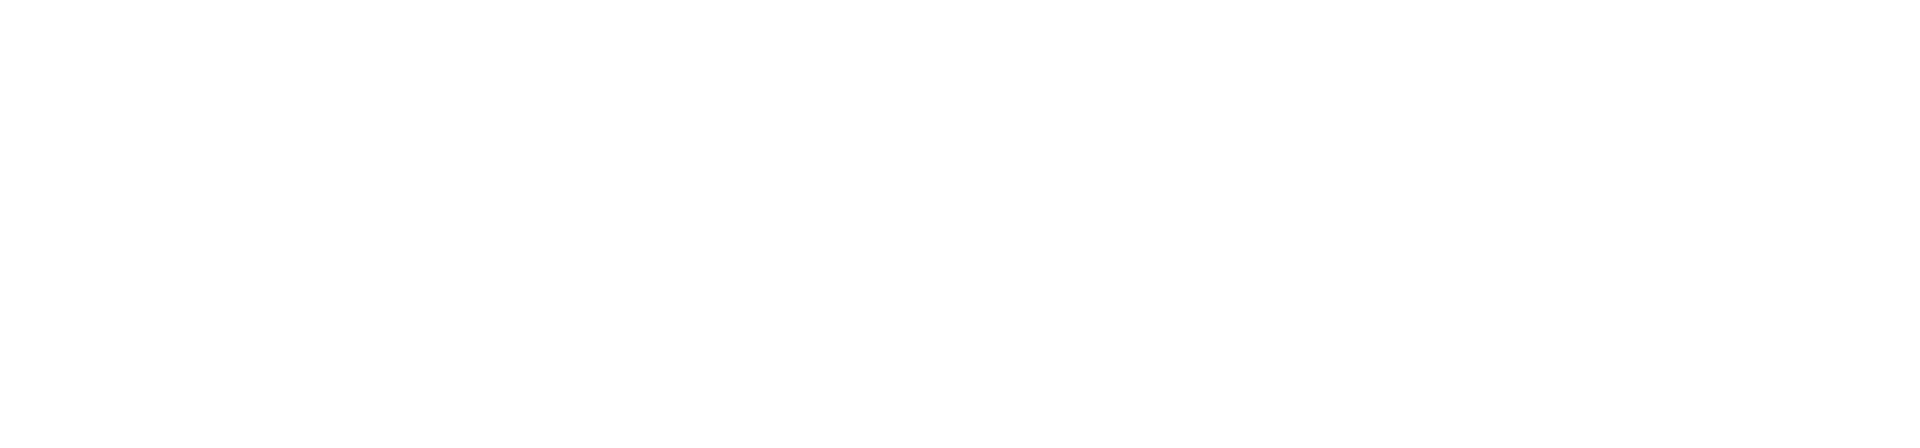 Strafford Media Logo